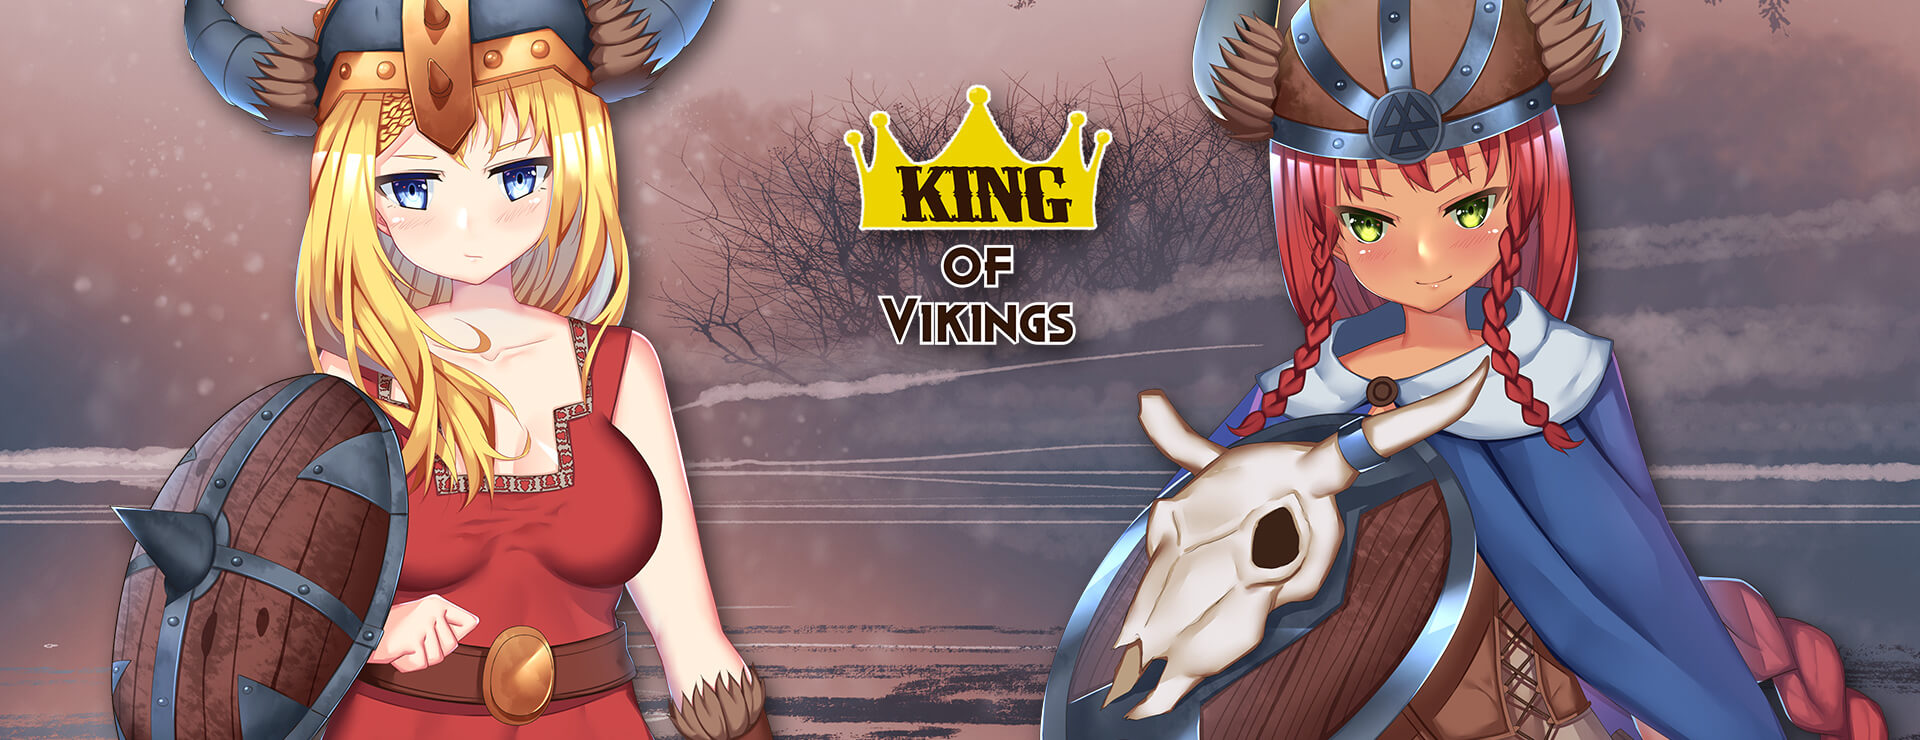 King of Vikings - Novela Visual Juego